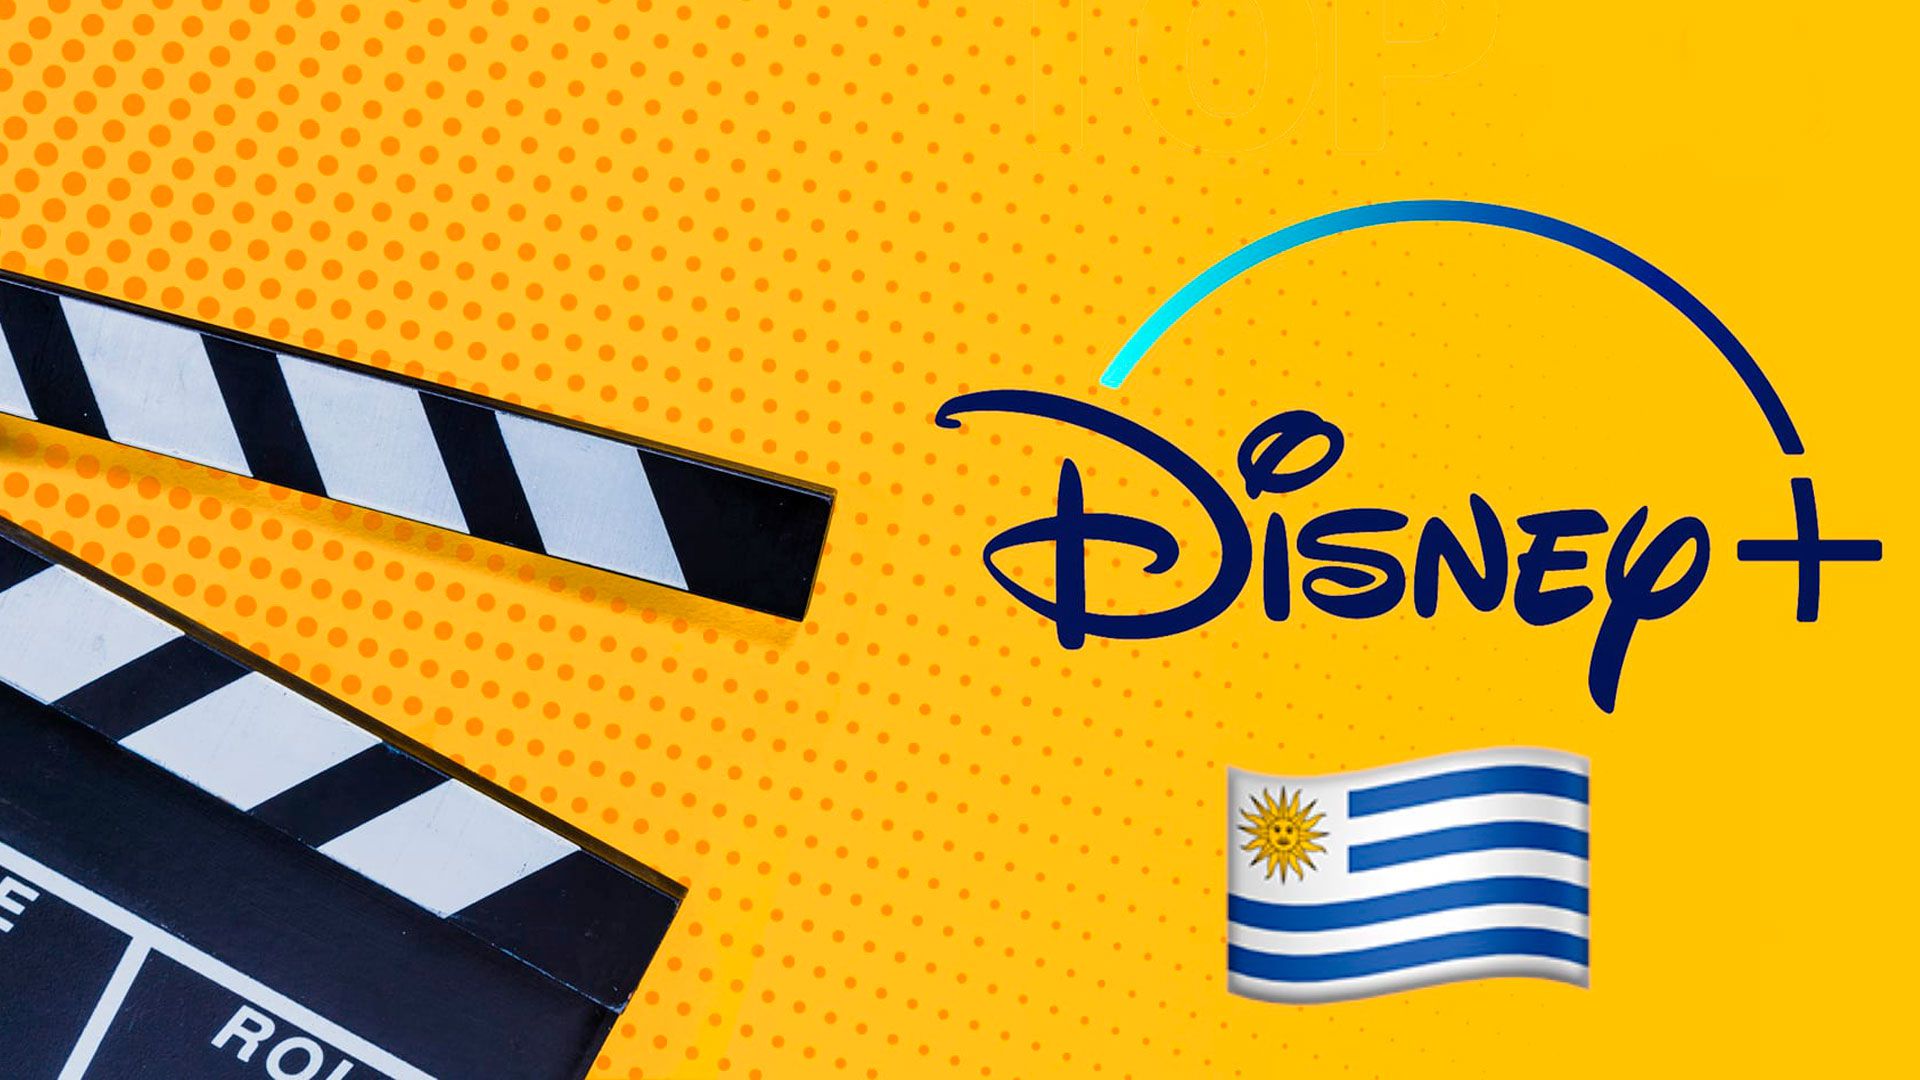 Ranking de las series más famosas de Disney+ en Uruguay